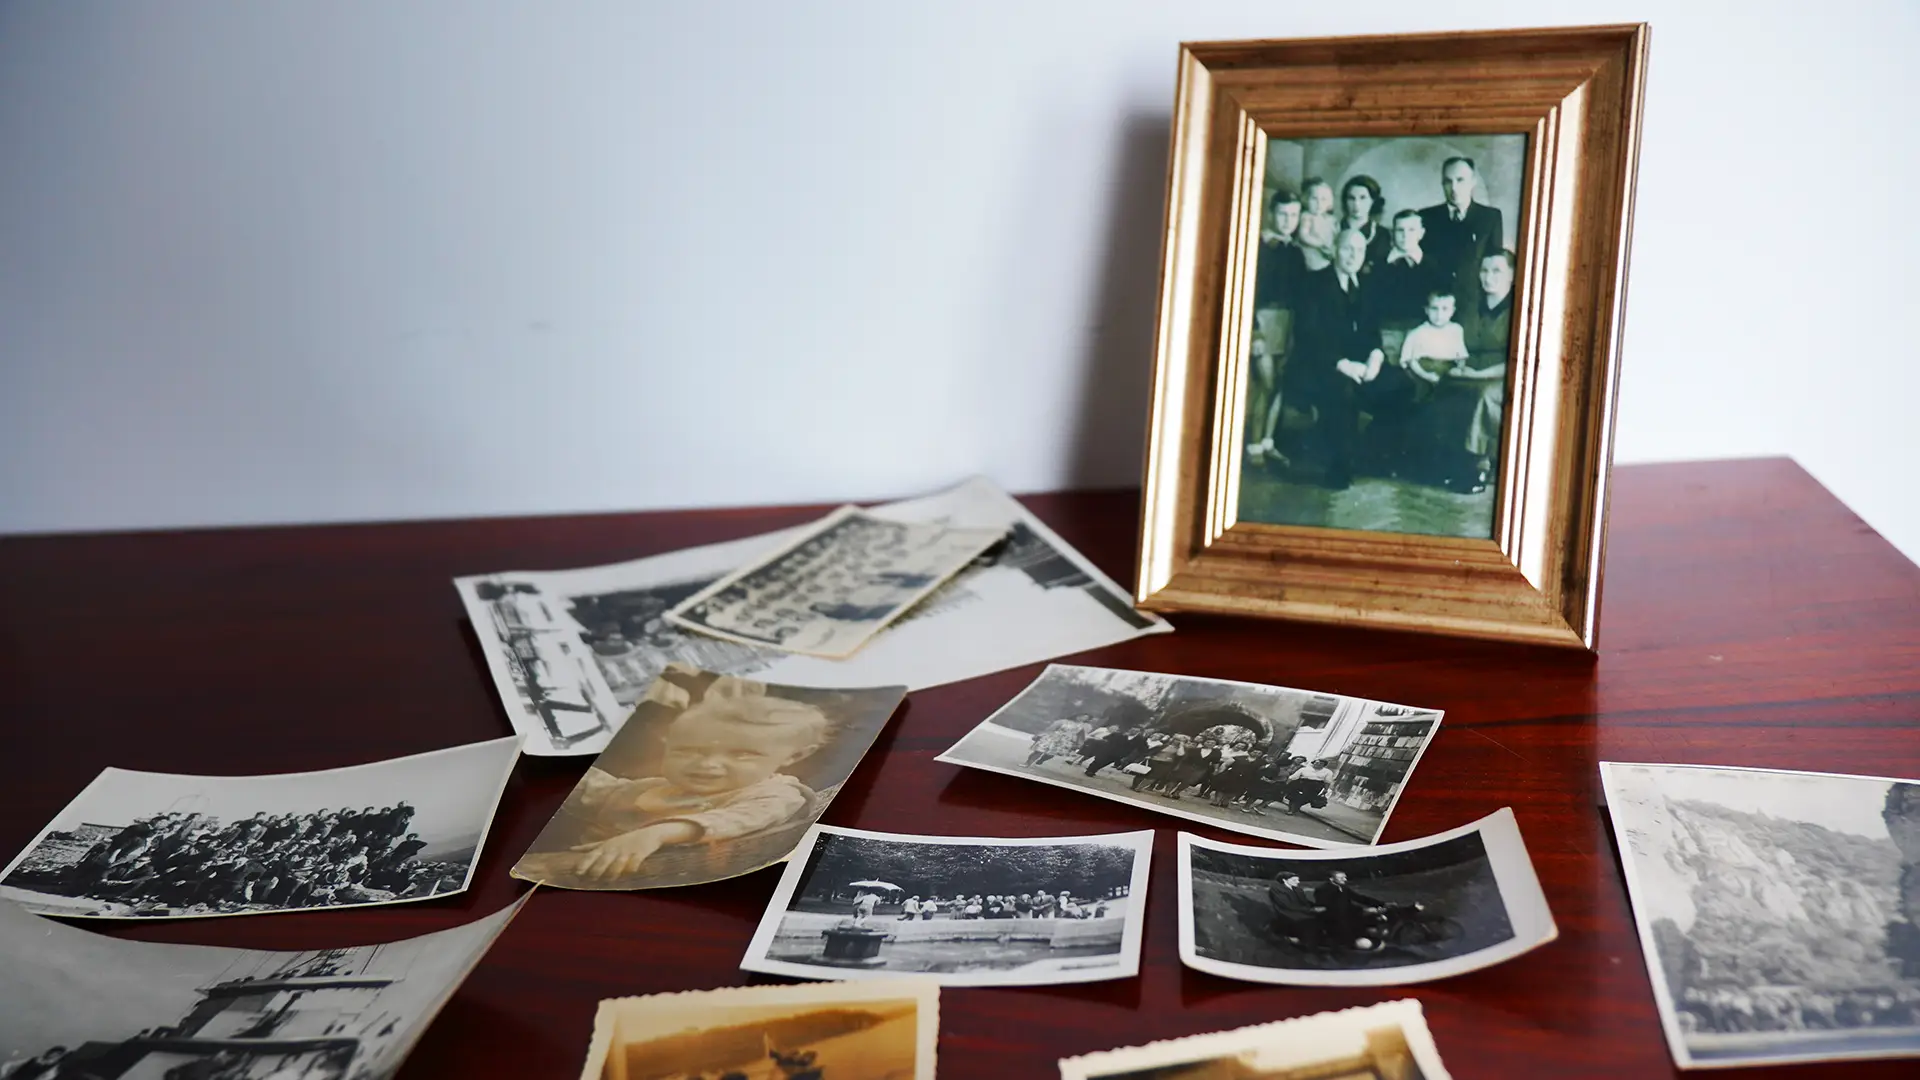 Ramka z zdjęciem rodzinnym oraz luźne stare fotografie na stoliku.